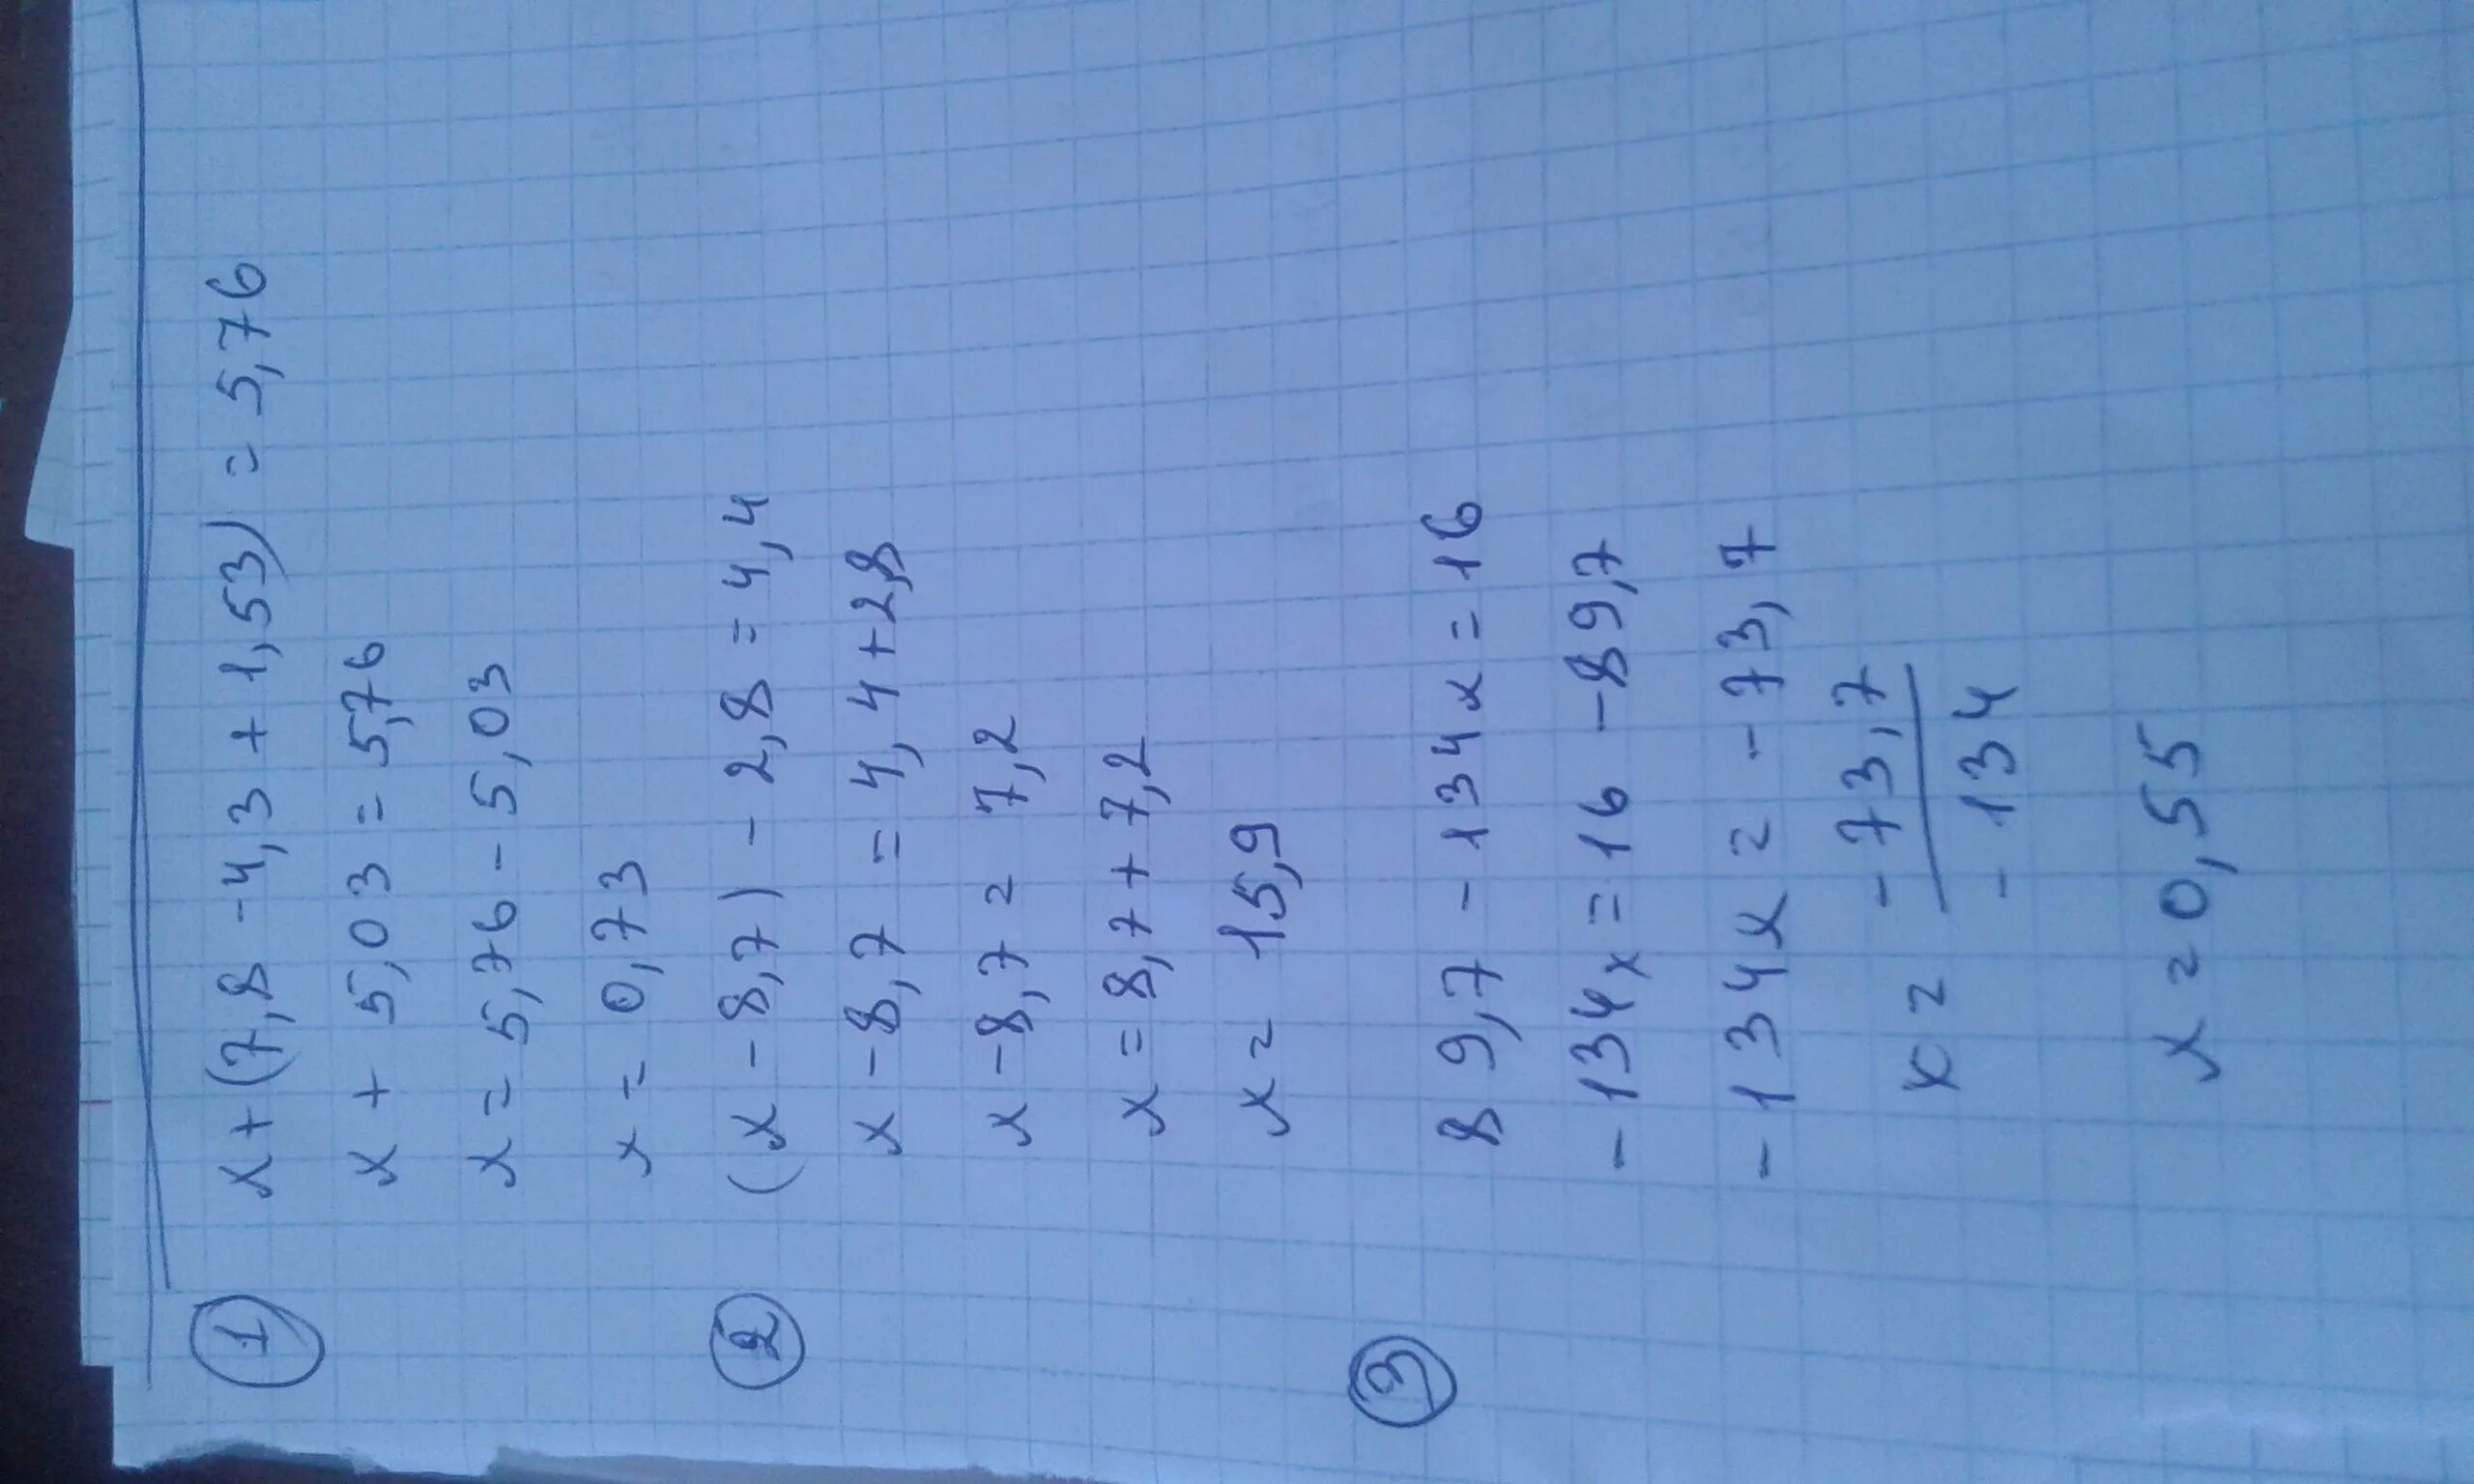 Х 8 е х 7. −X2+7x−7. Х/2-X-3/4-X+1/8<1/2. 8-7x ⩾3x+5. (X-1)^2.